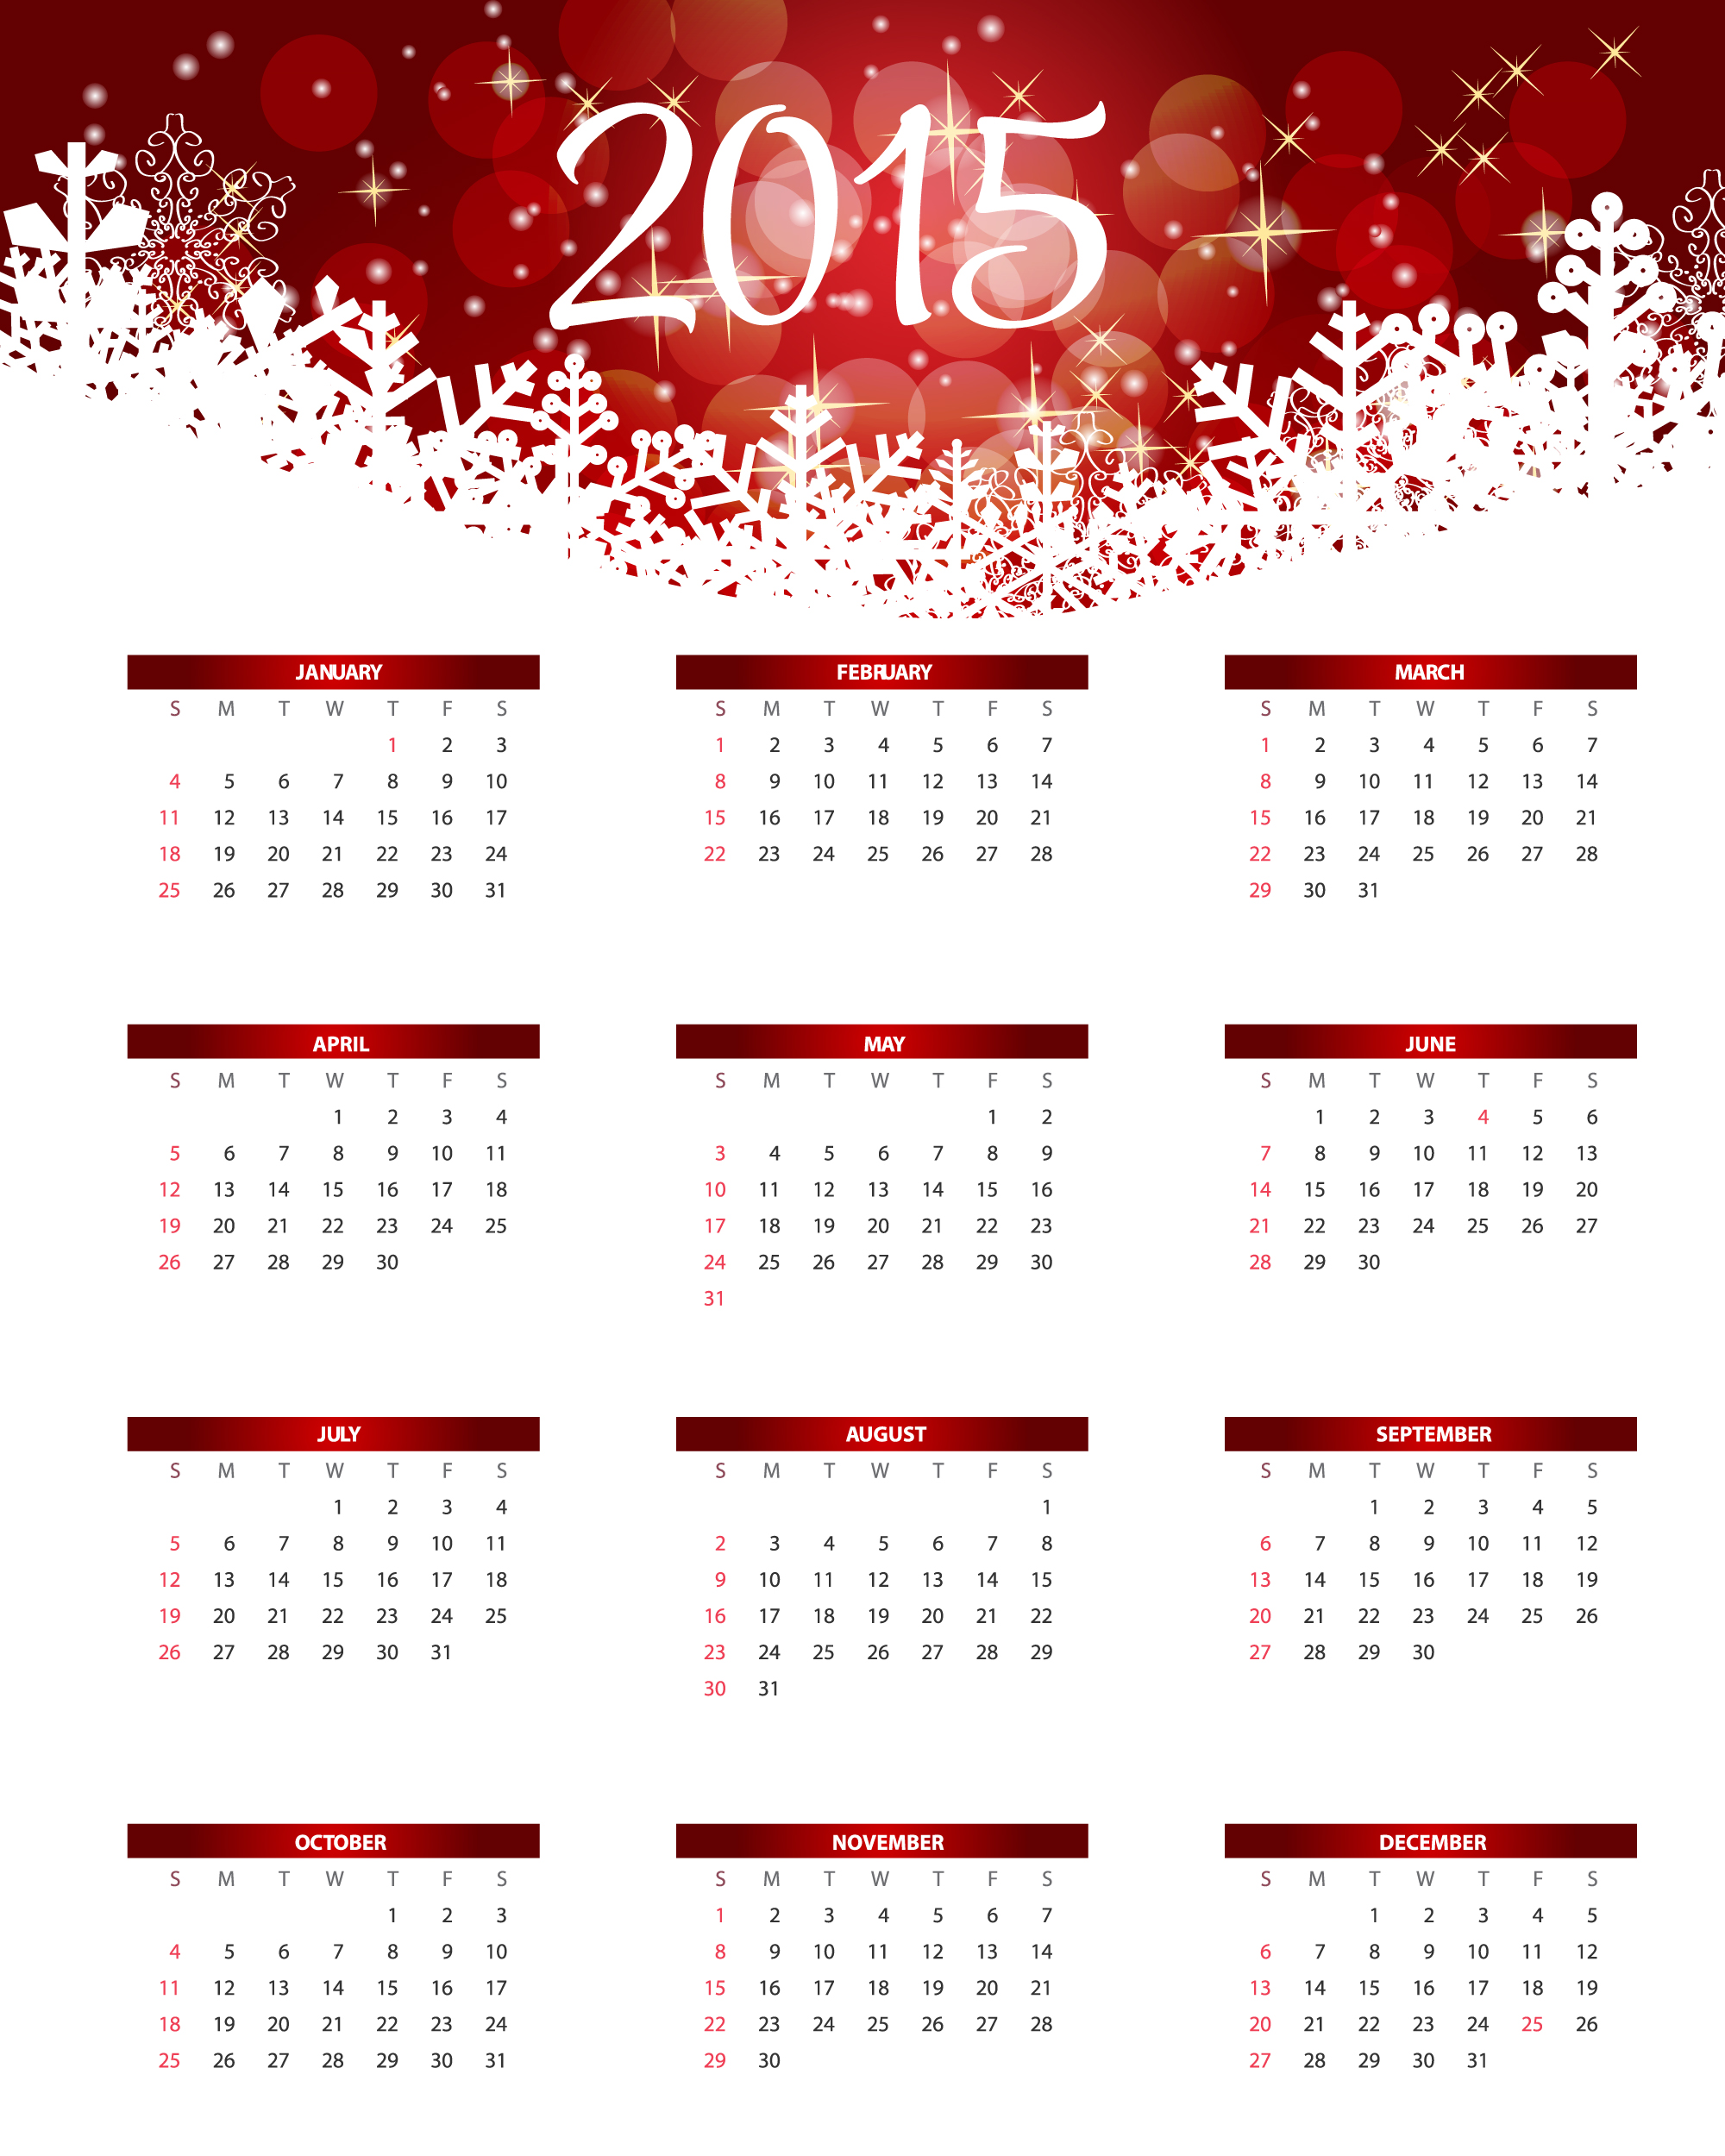 2015 Calendar Vector Free